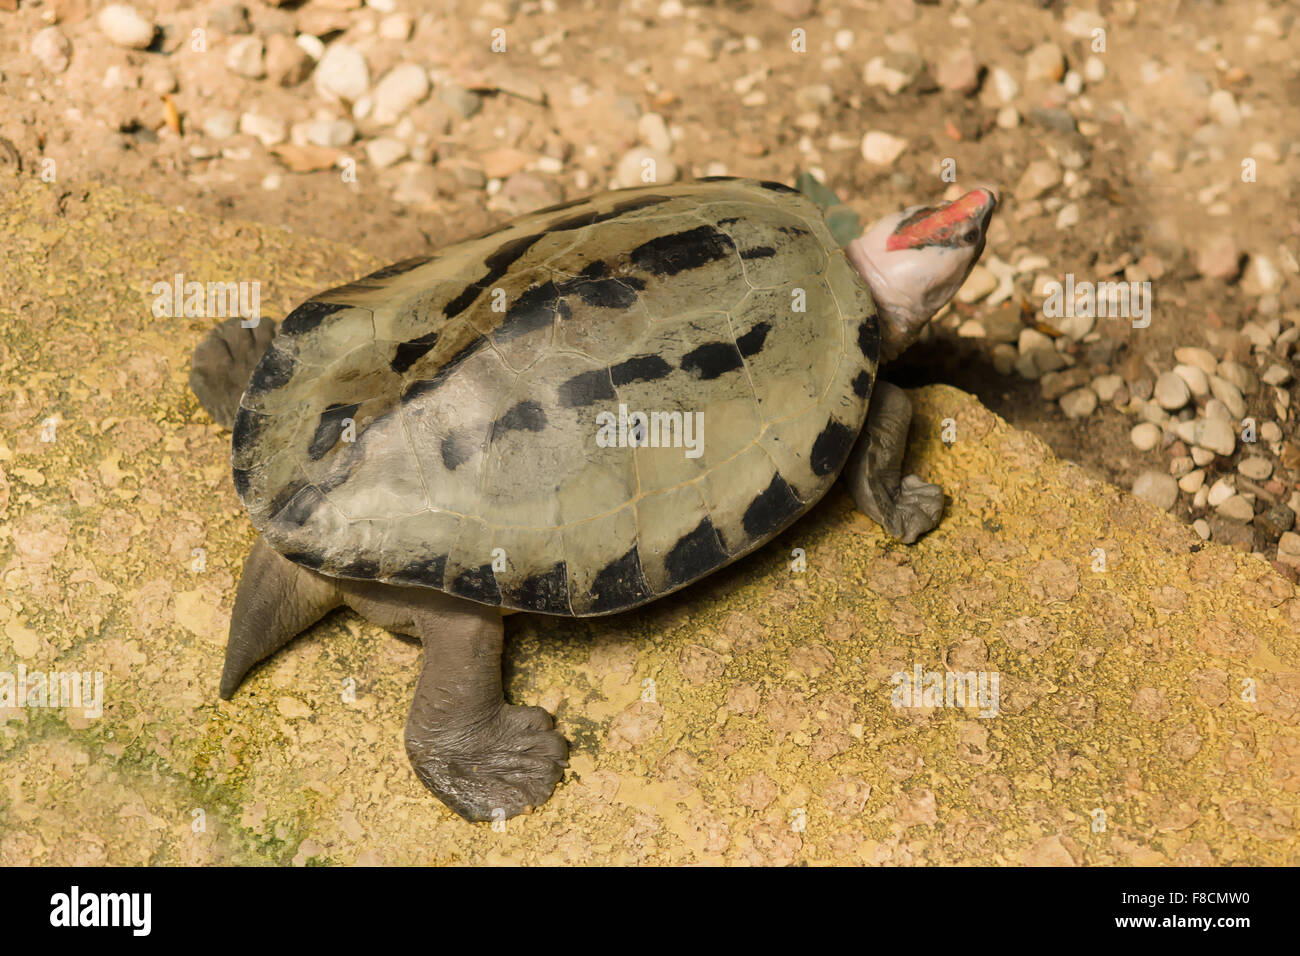 Le rare tortue avec un nez rouge a été sélectionné sur la côte avec des pierres Banque D'Images